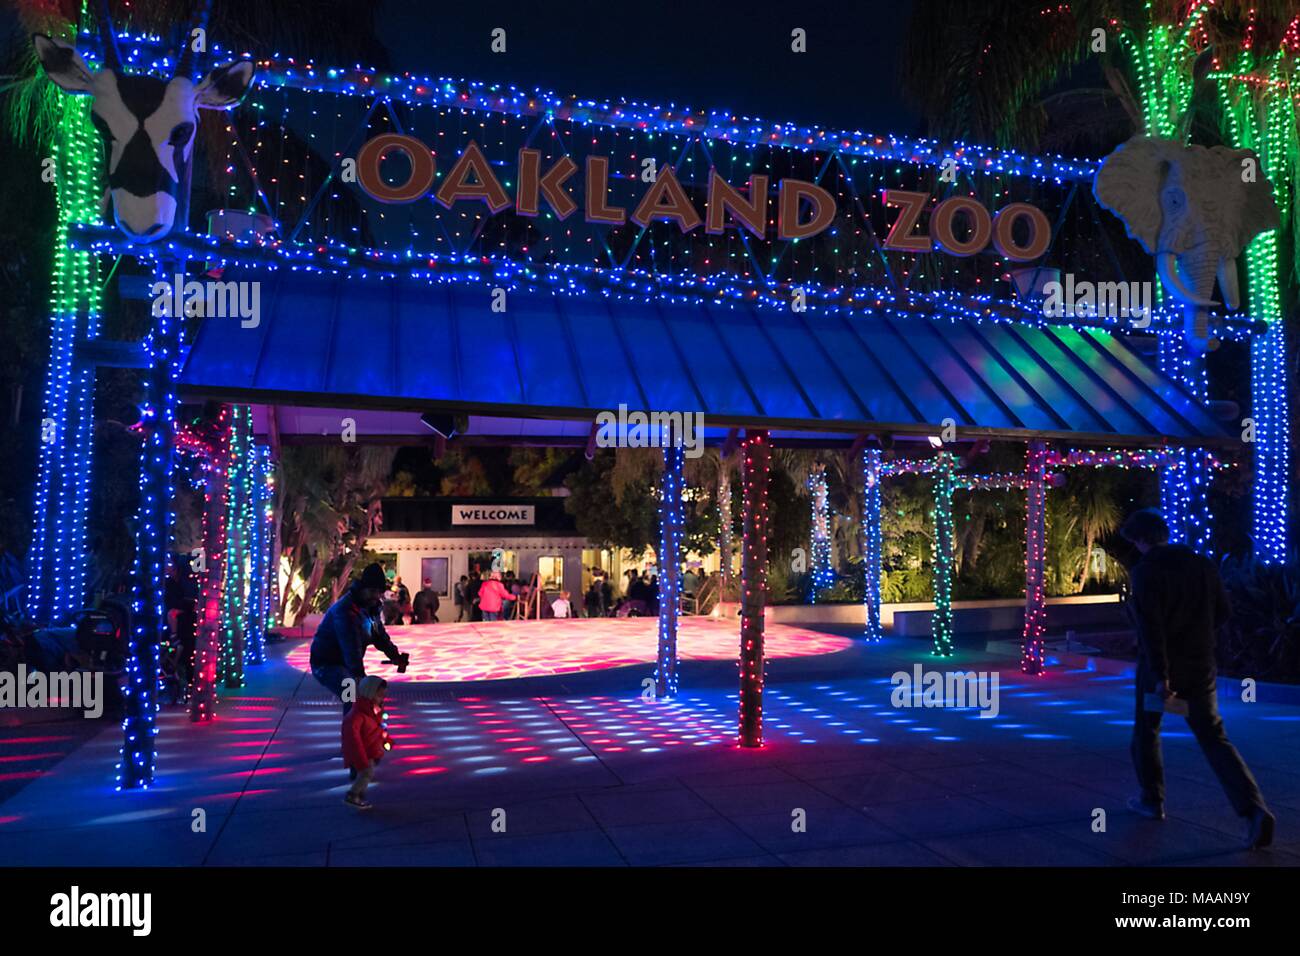 Eingang der Oakland Zoo in Oakland, Kalifornien, mit aufwendigen Weihnachtsbeleuchtung Anzeige, Teil des jährlichen Zoo Beleuchtung event, 27. Dezember 2017. () Stockfoto